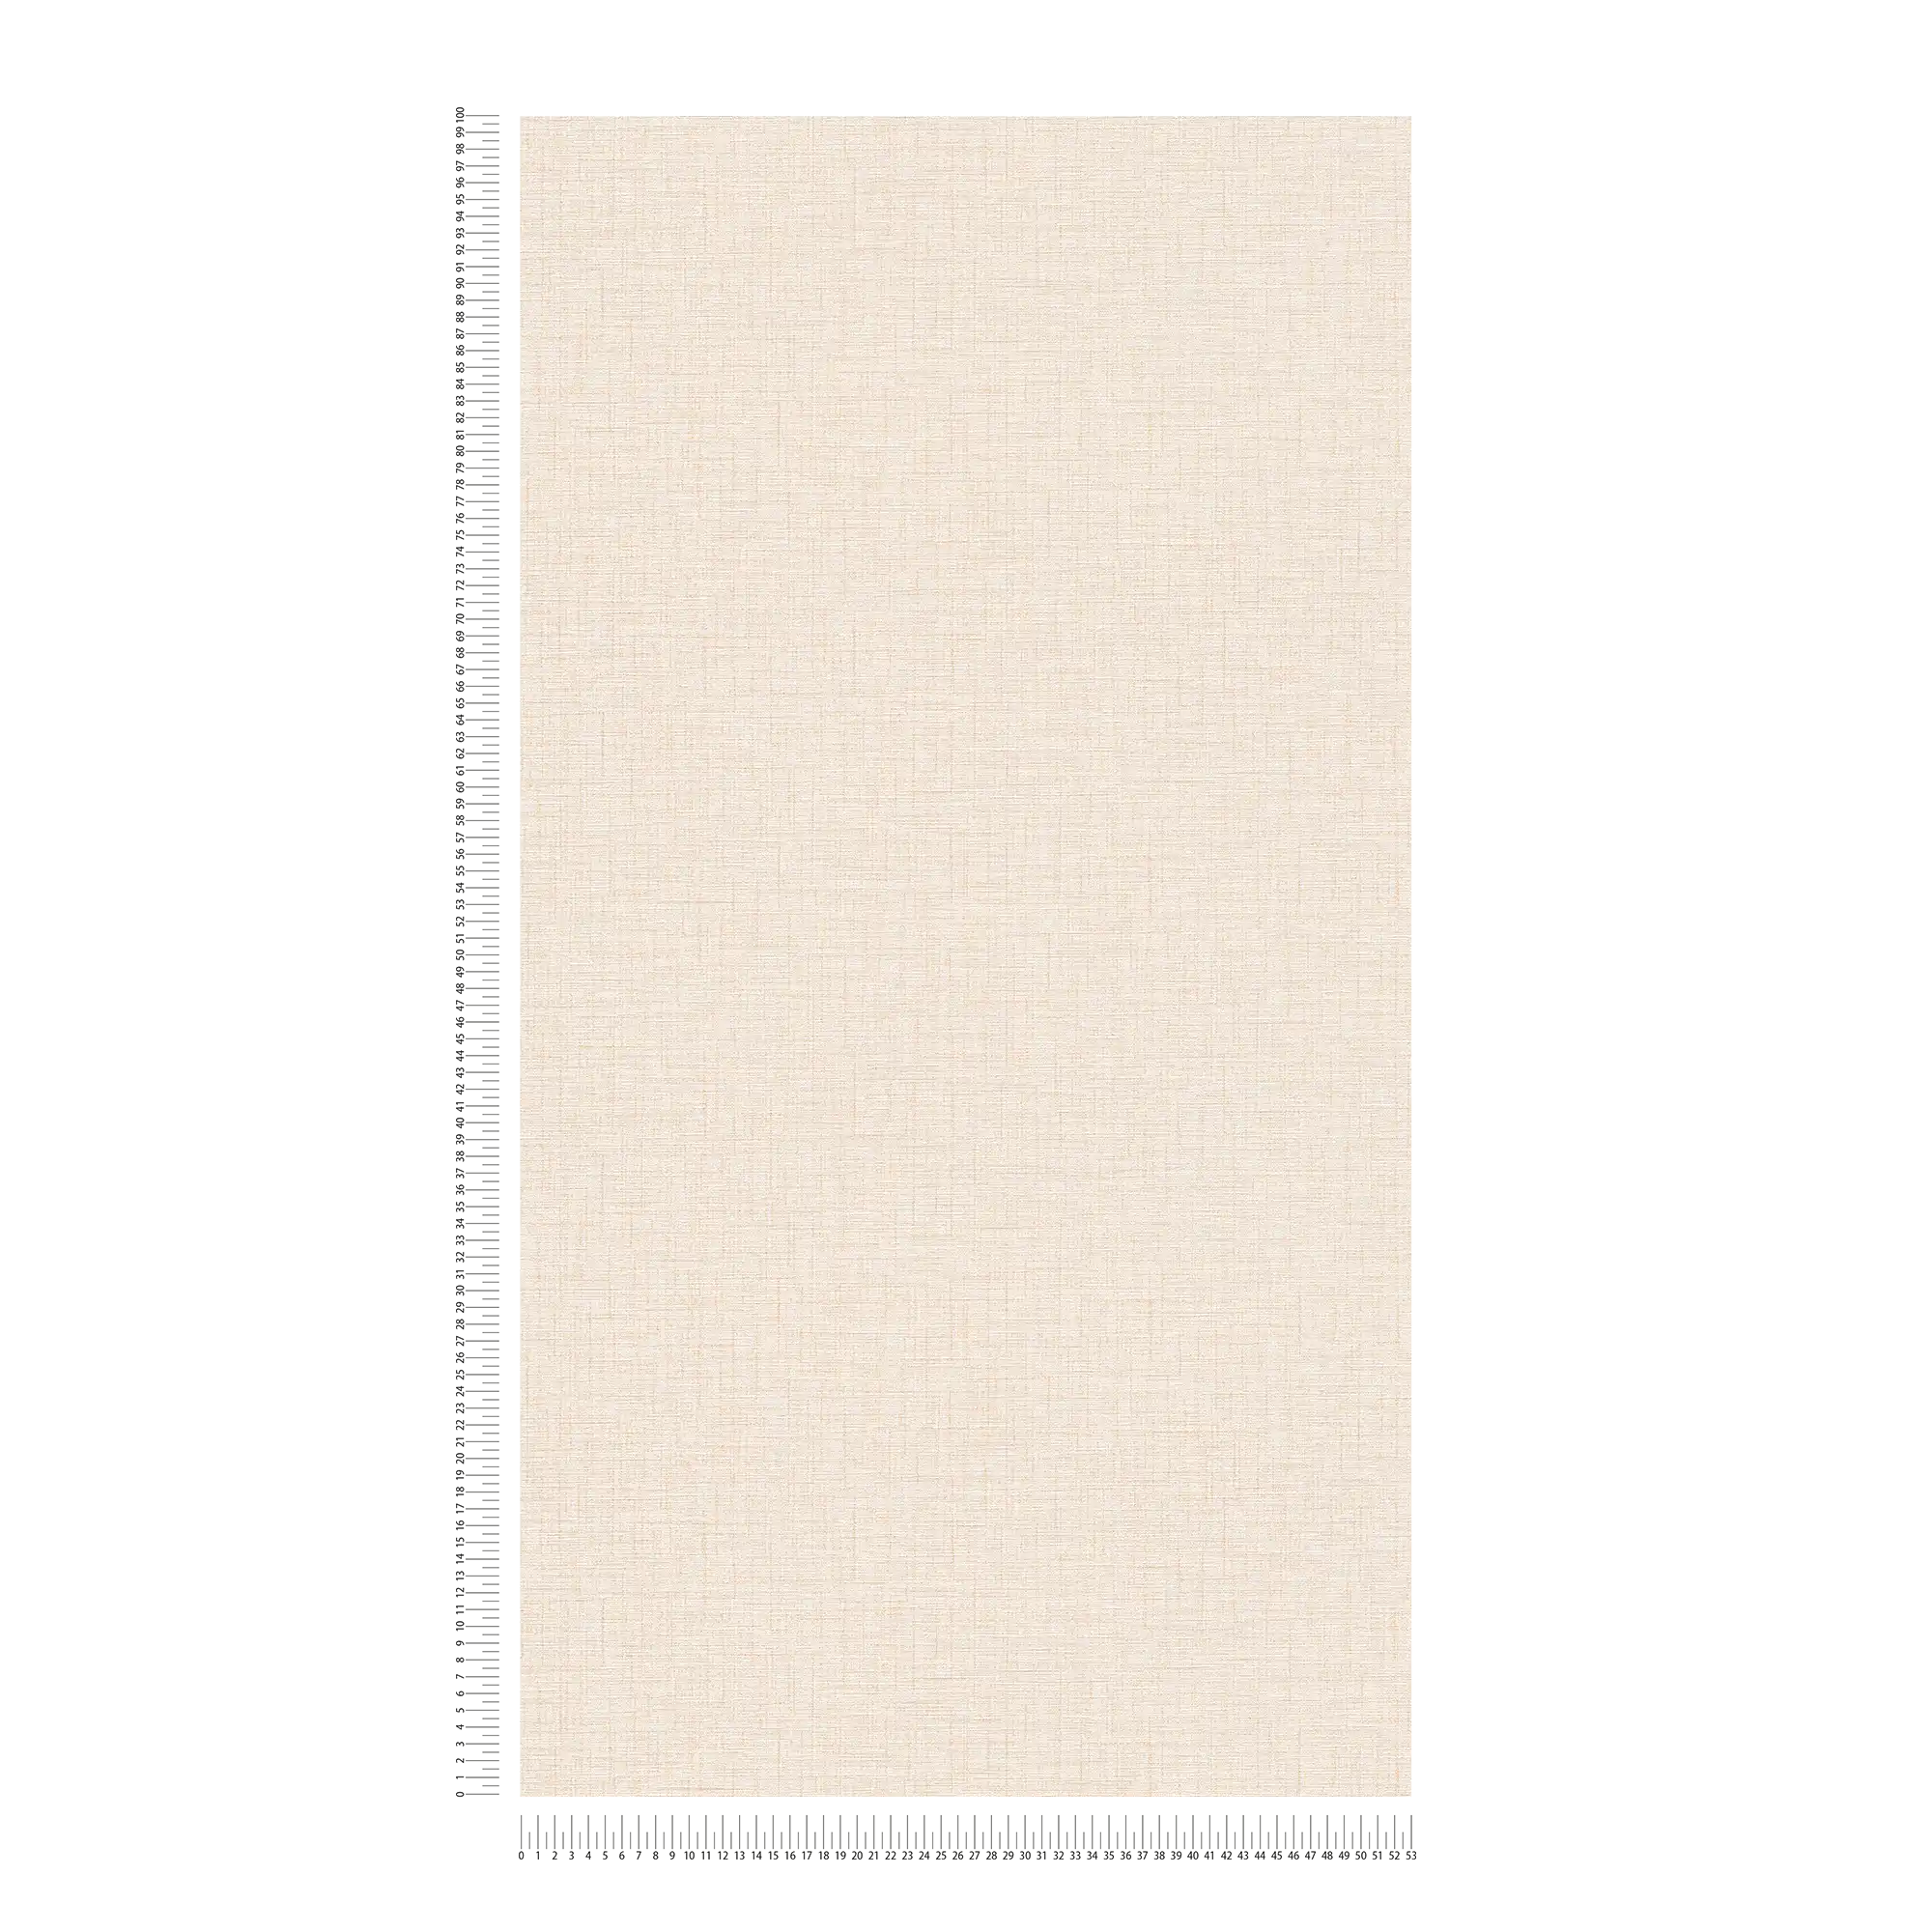             Melange plain wallpaper with linen look & structure - beige, yellow
        